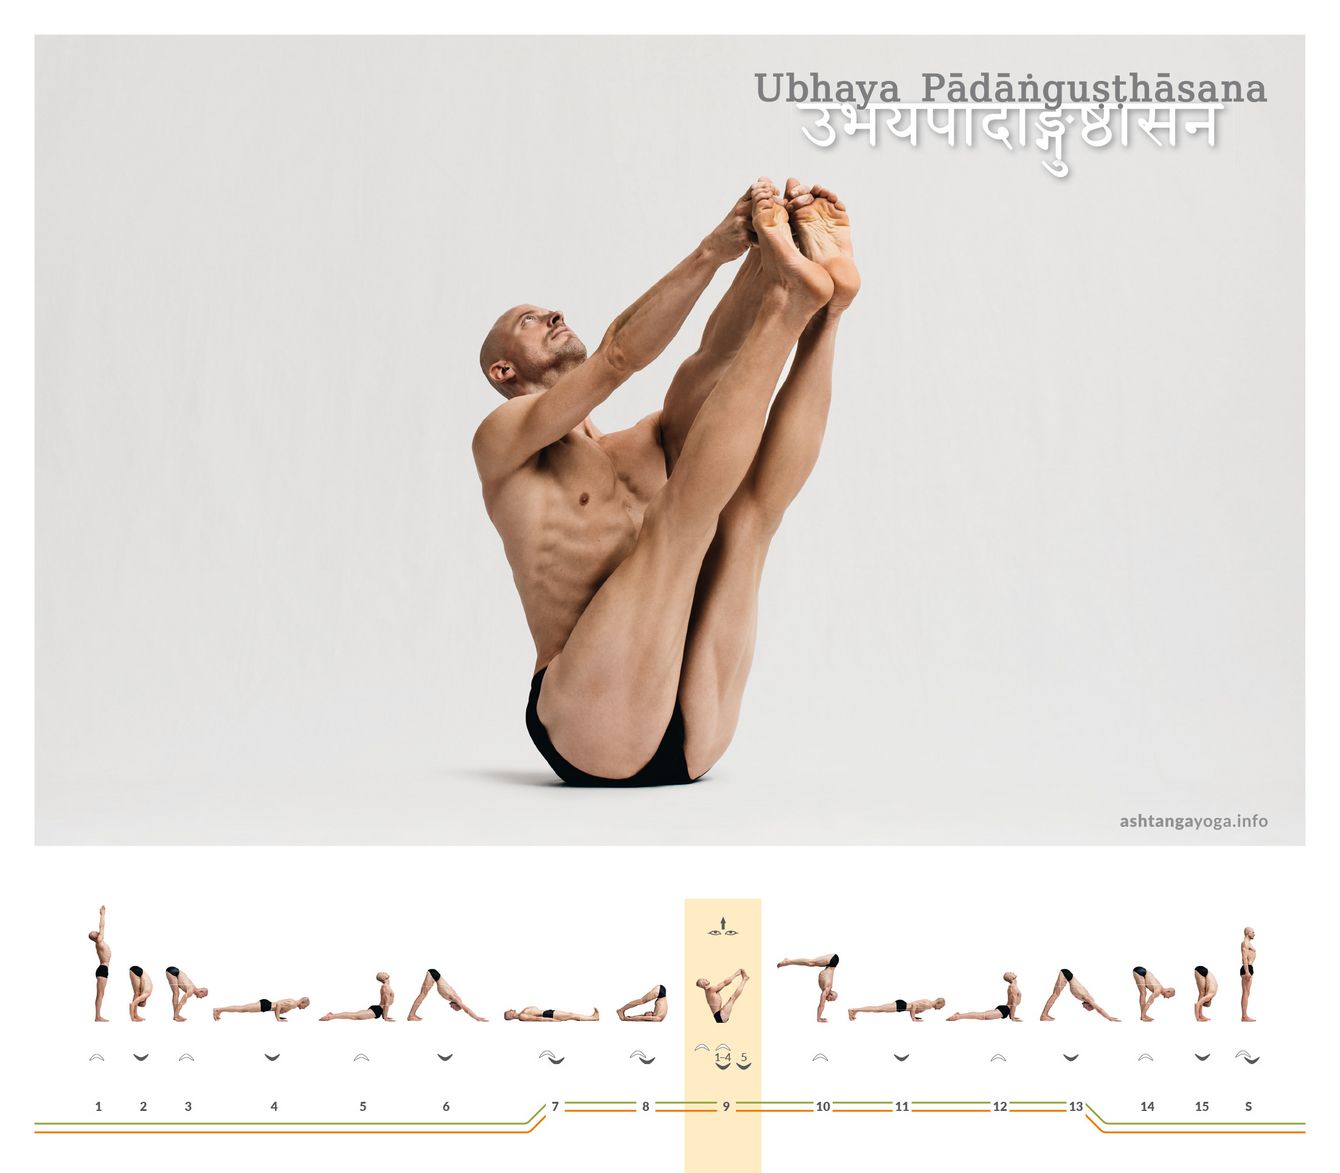 Ubhaya Padangushthasana ist eine Haltung, bei der Du auf dem Becken balancierst. Beine, Arme, Rücken sind gerade. Du greifst mit beiden Händen jeweils die großen Zehen. Die Beine sind zusammen. 